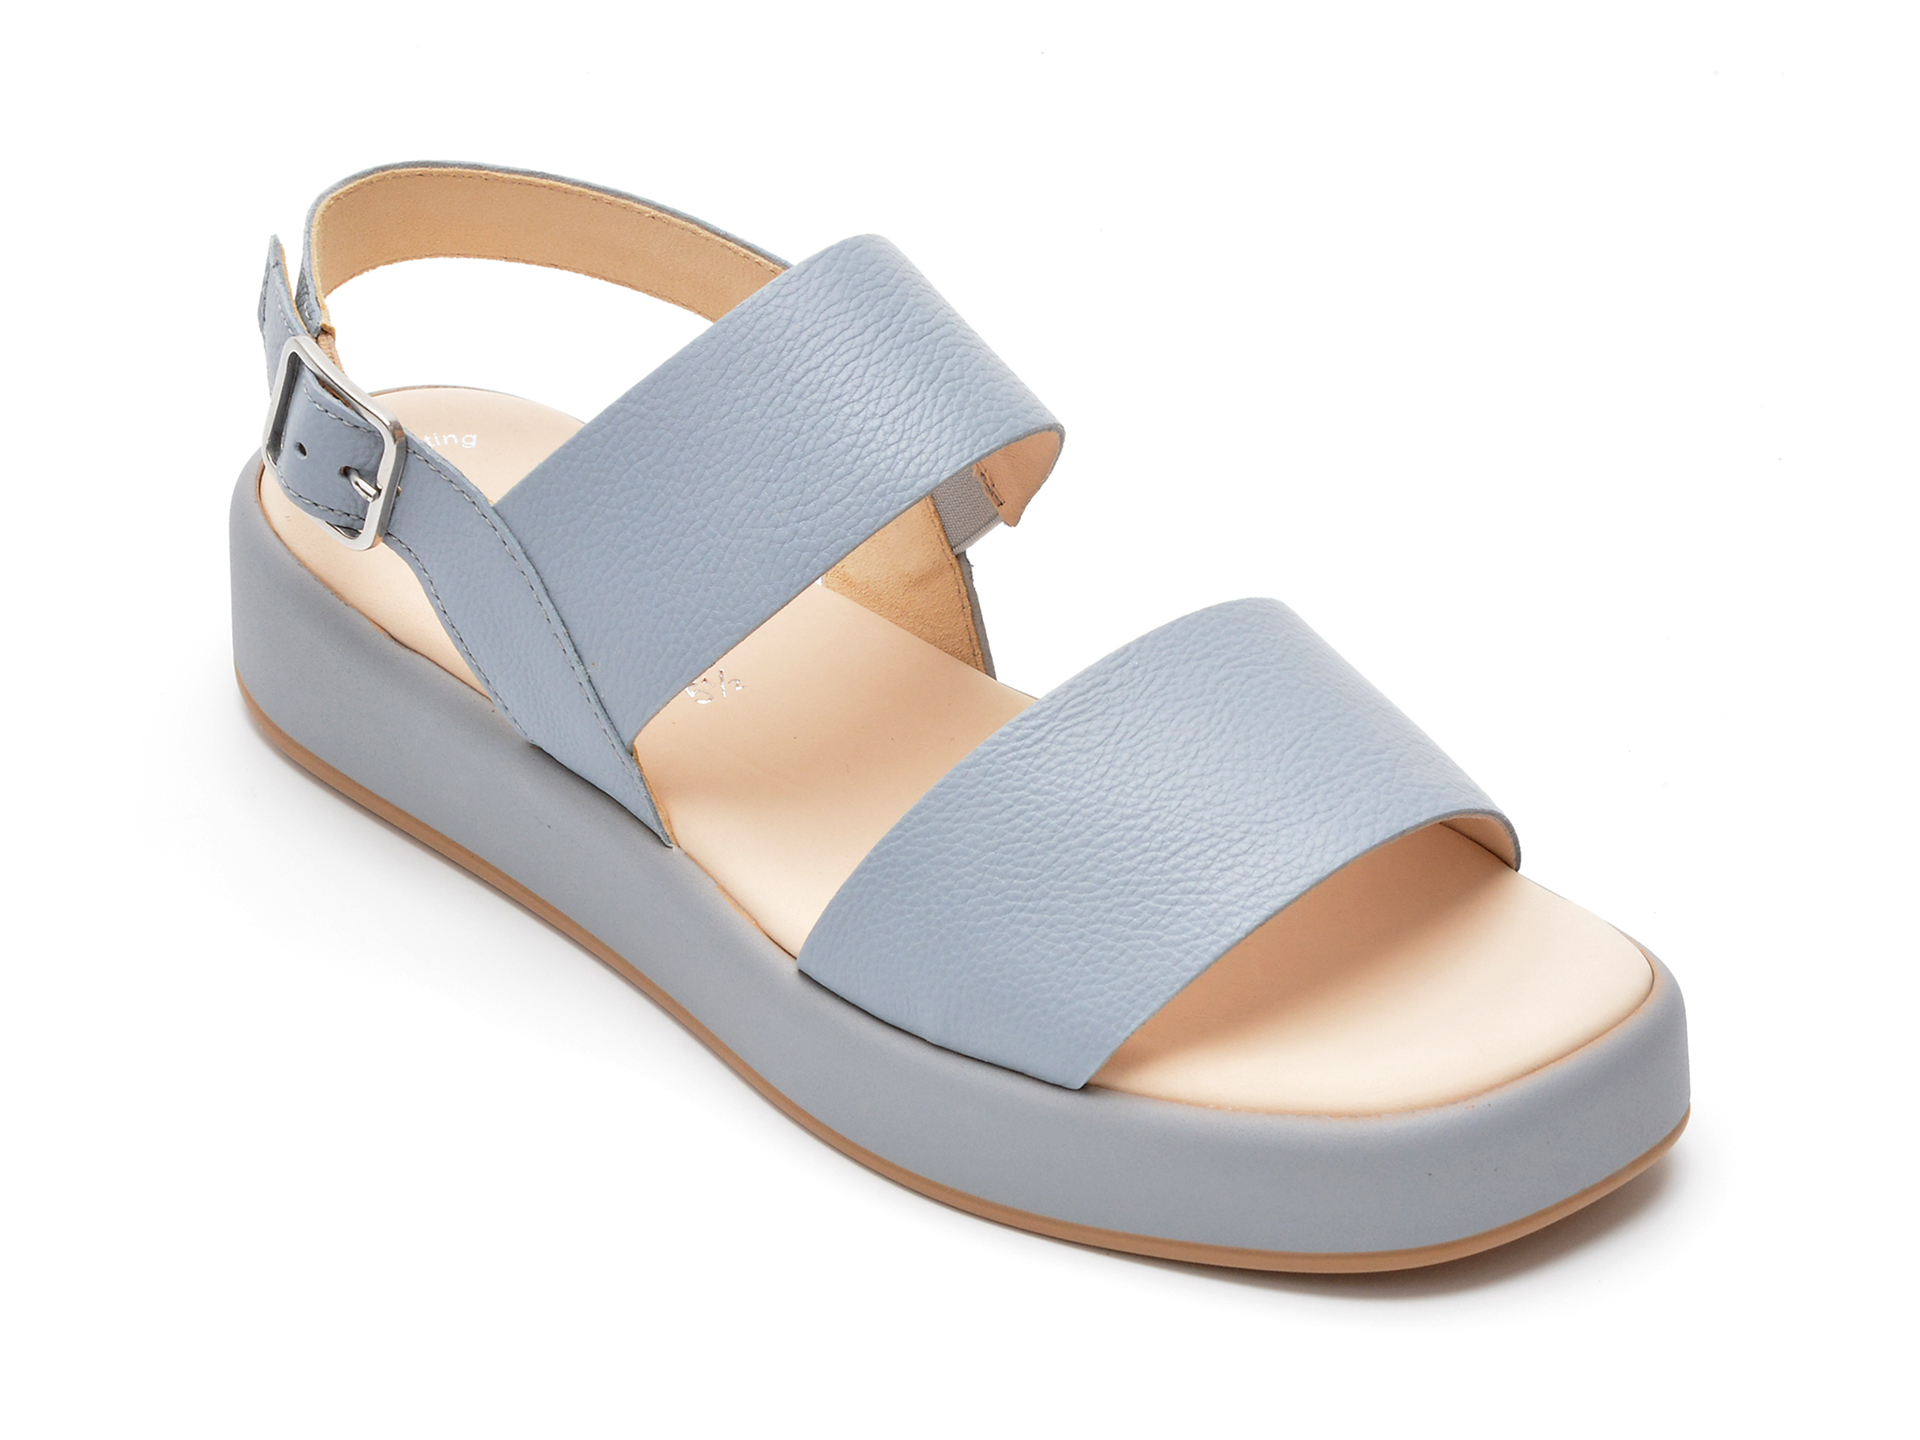 Sandale GABOR albastre, 84520, din piele naturala /femei/sandale imagine noua